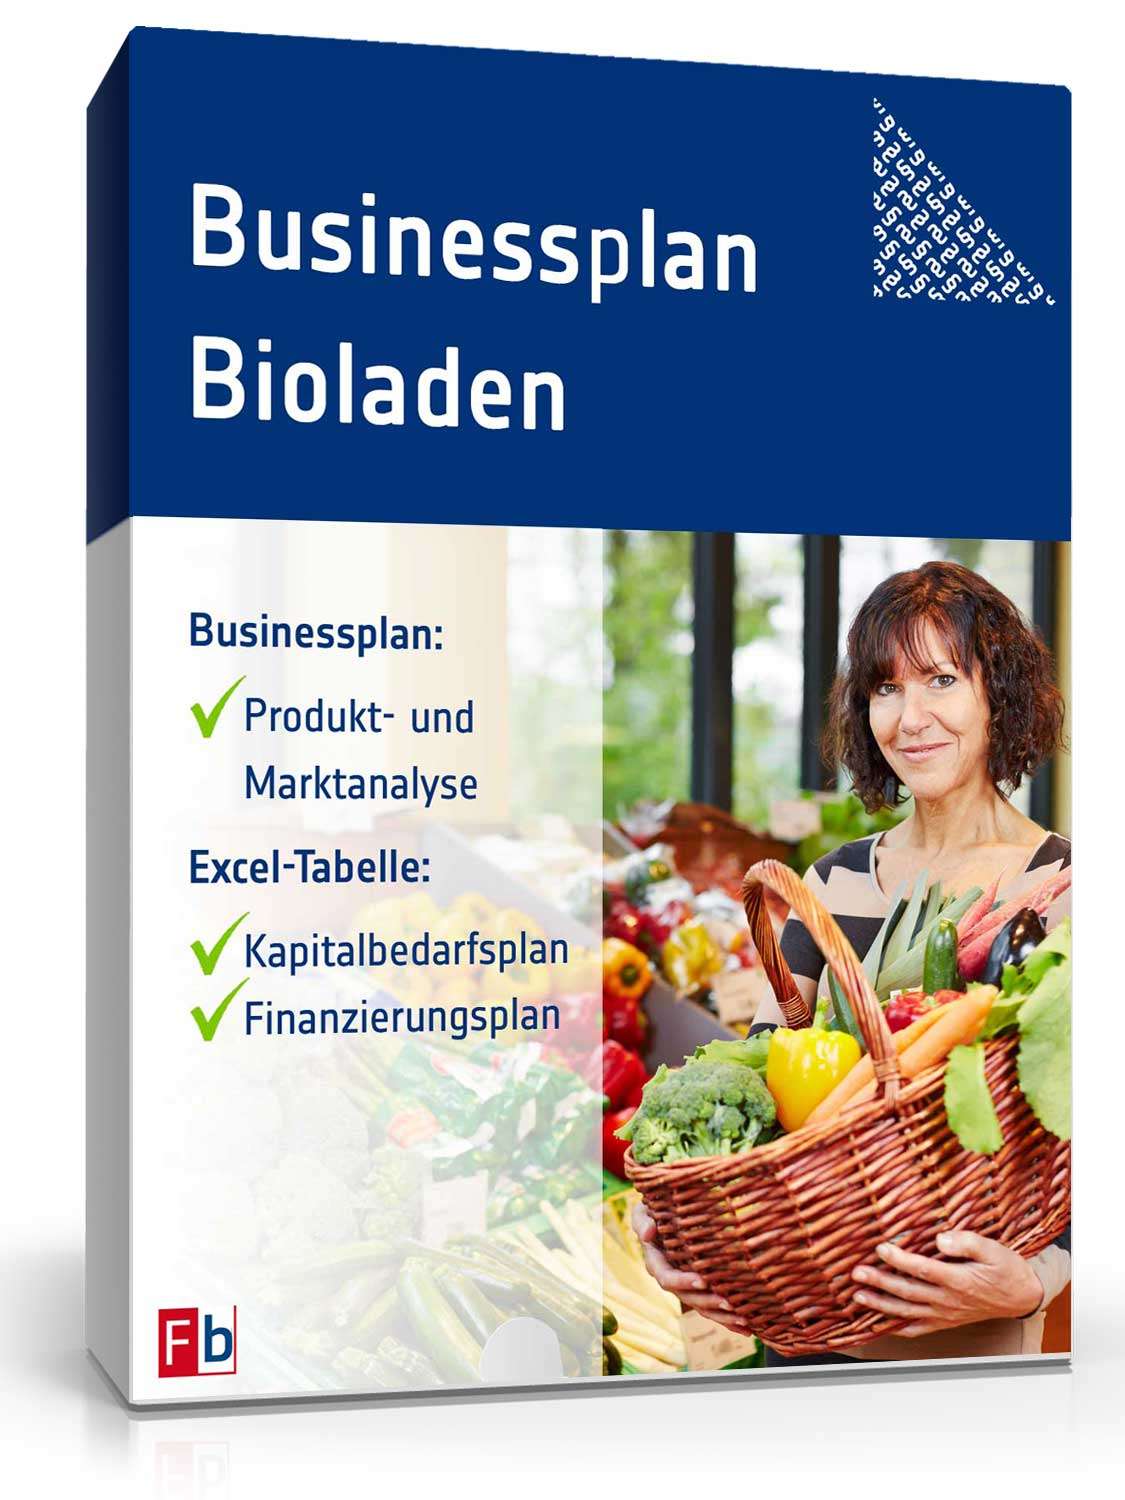 Hauptbild des Produkts: Businessplan Bioladen